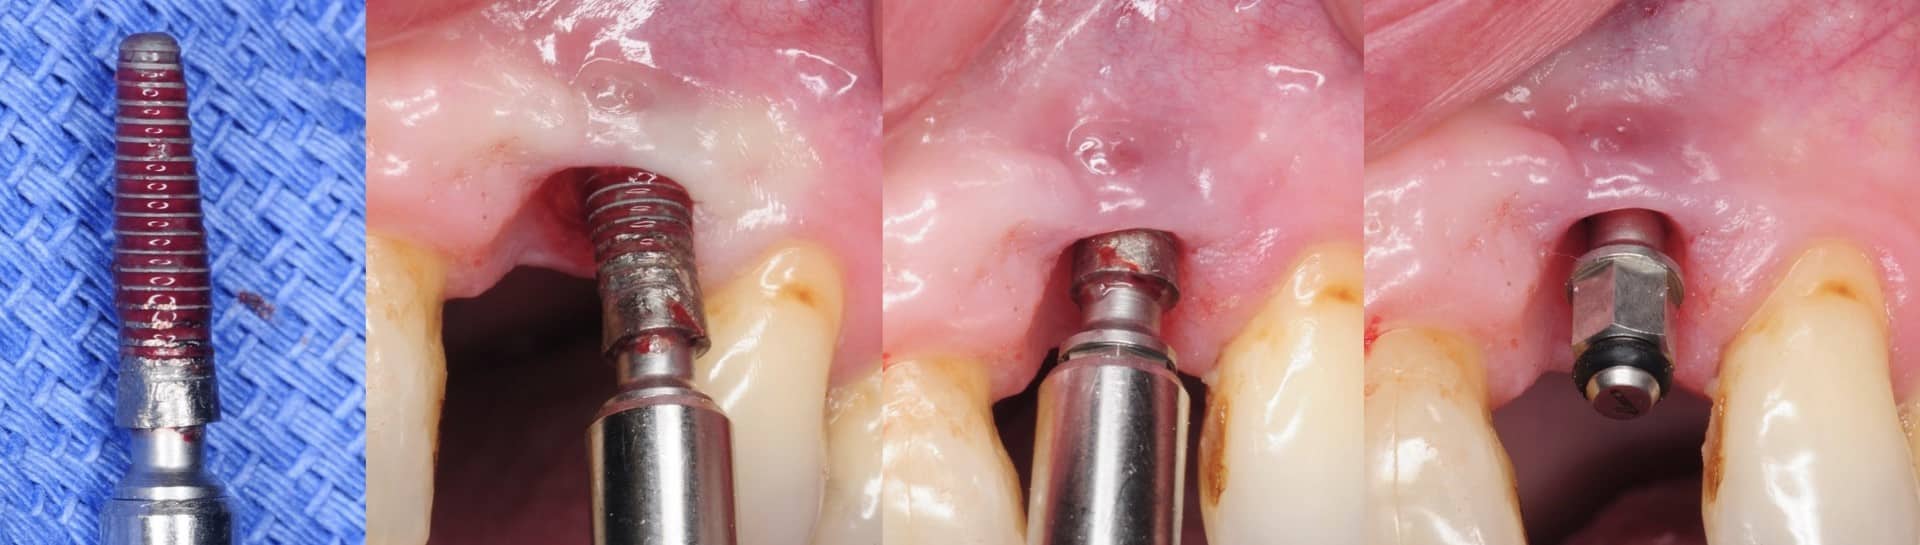 علل عفونت ایمپلنت دندانی